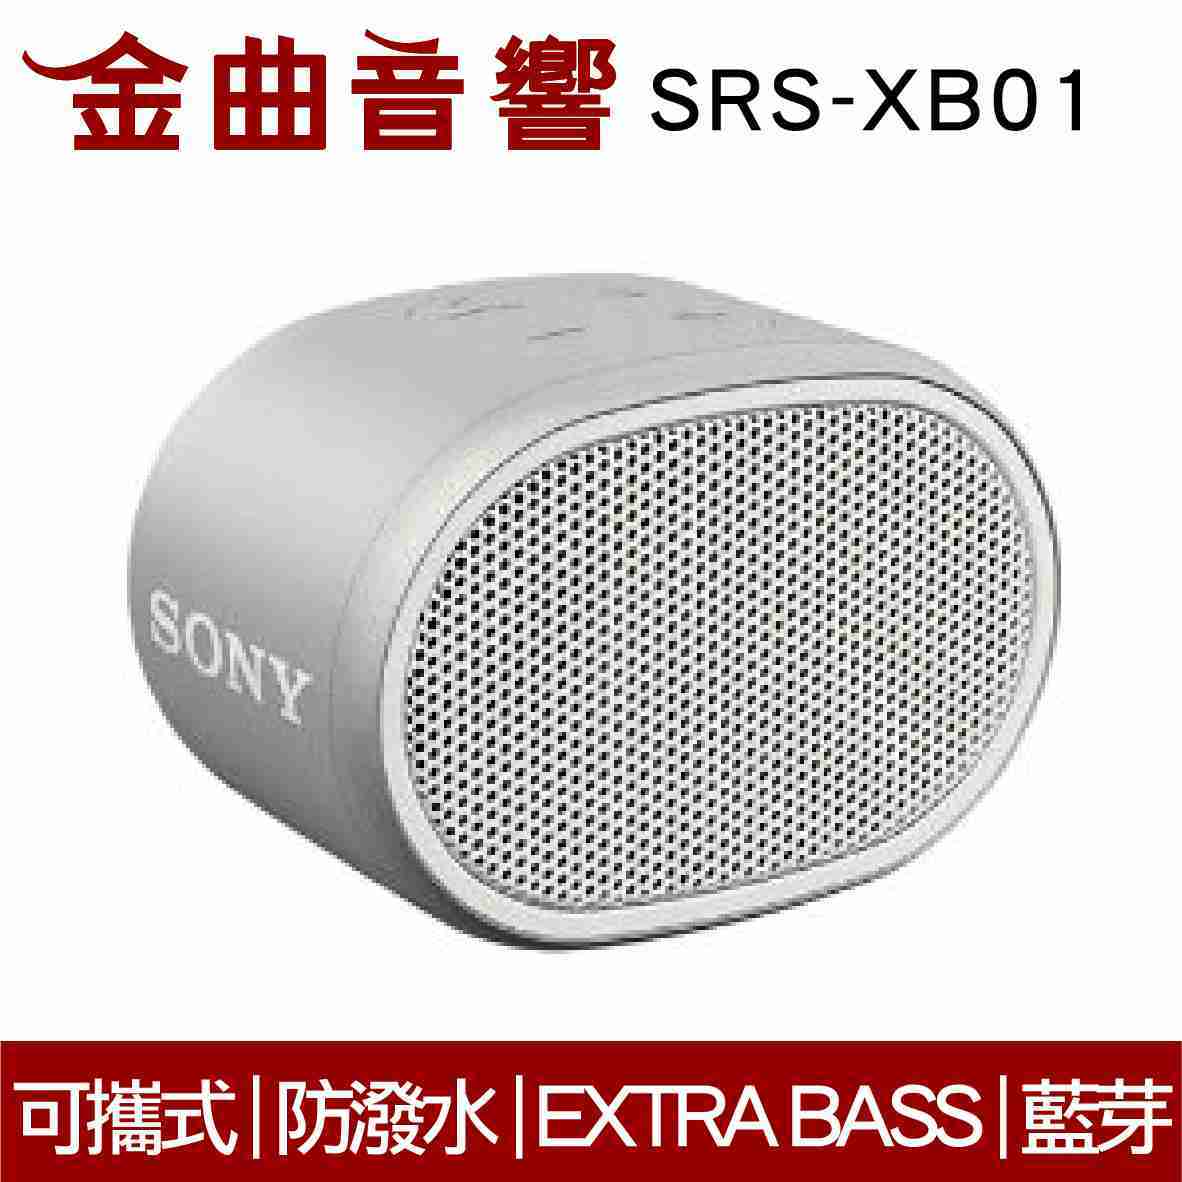 SONY 索尼 SRS-XB01 白色 可攜式 防潑水 重低音 EXTRA BASS 藍芽 喇叭 | 金曲音響